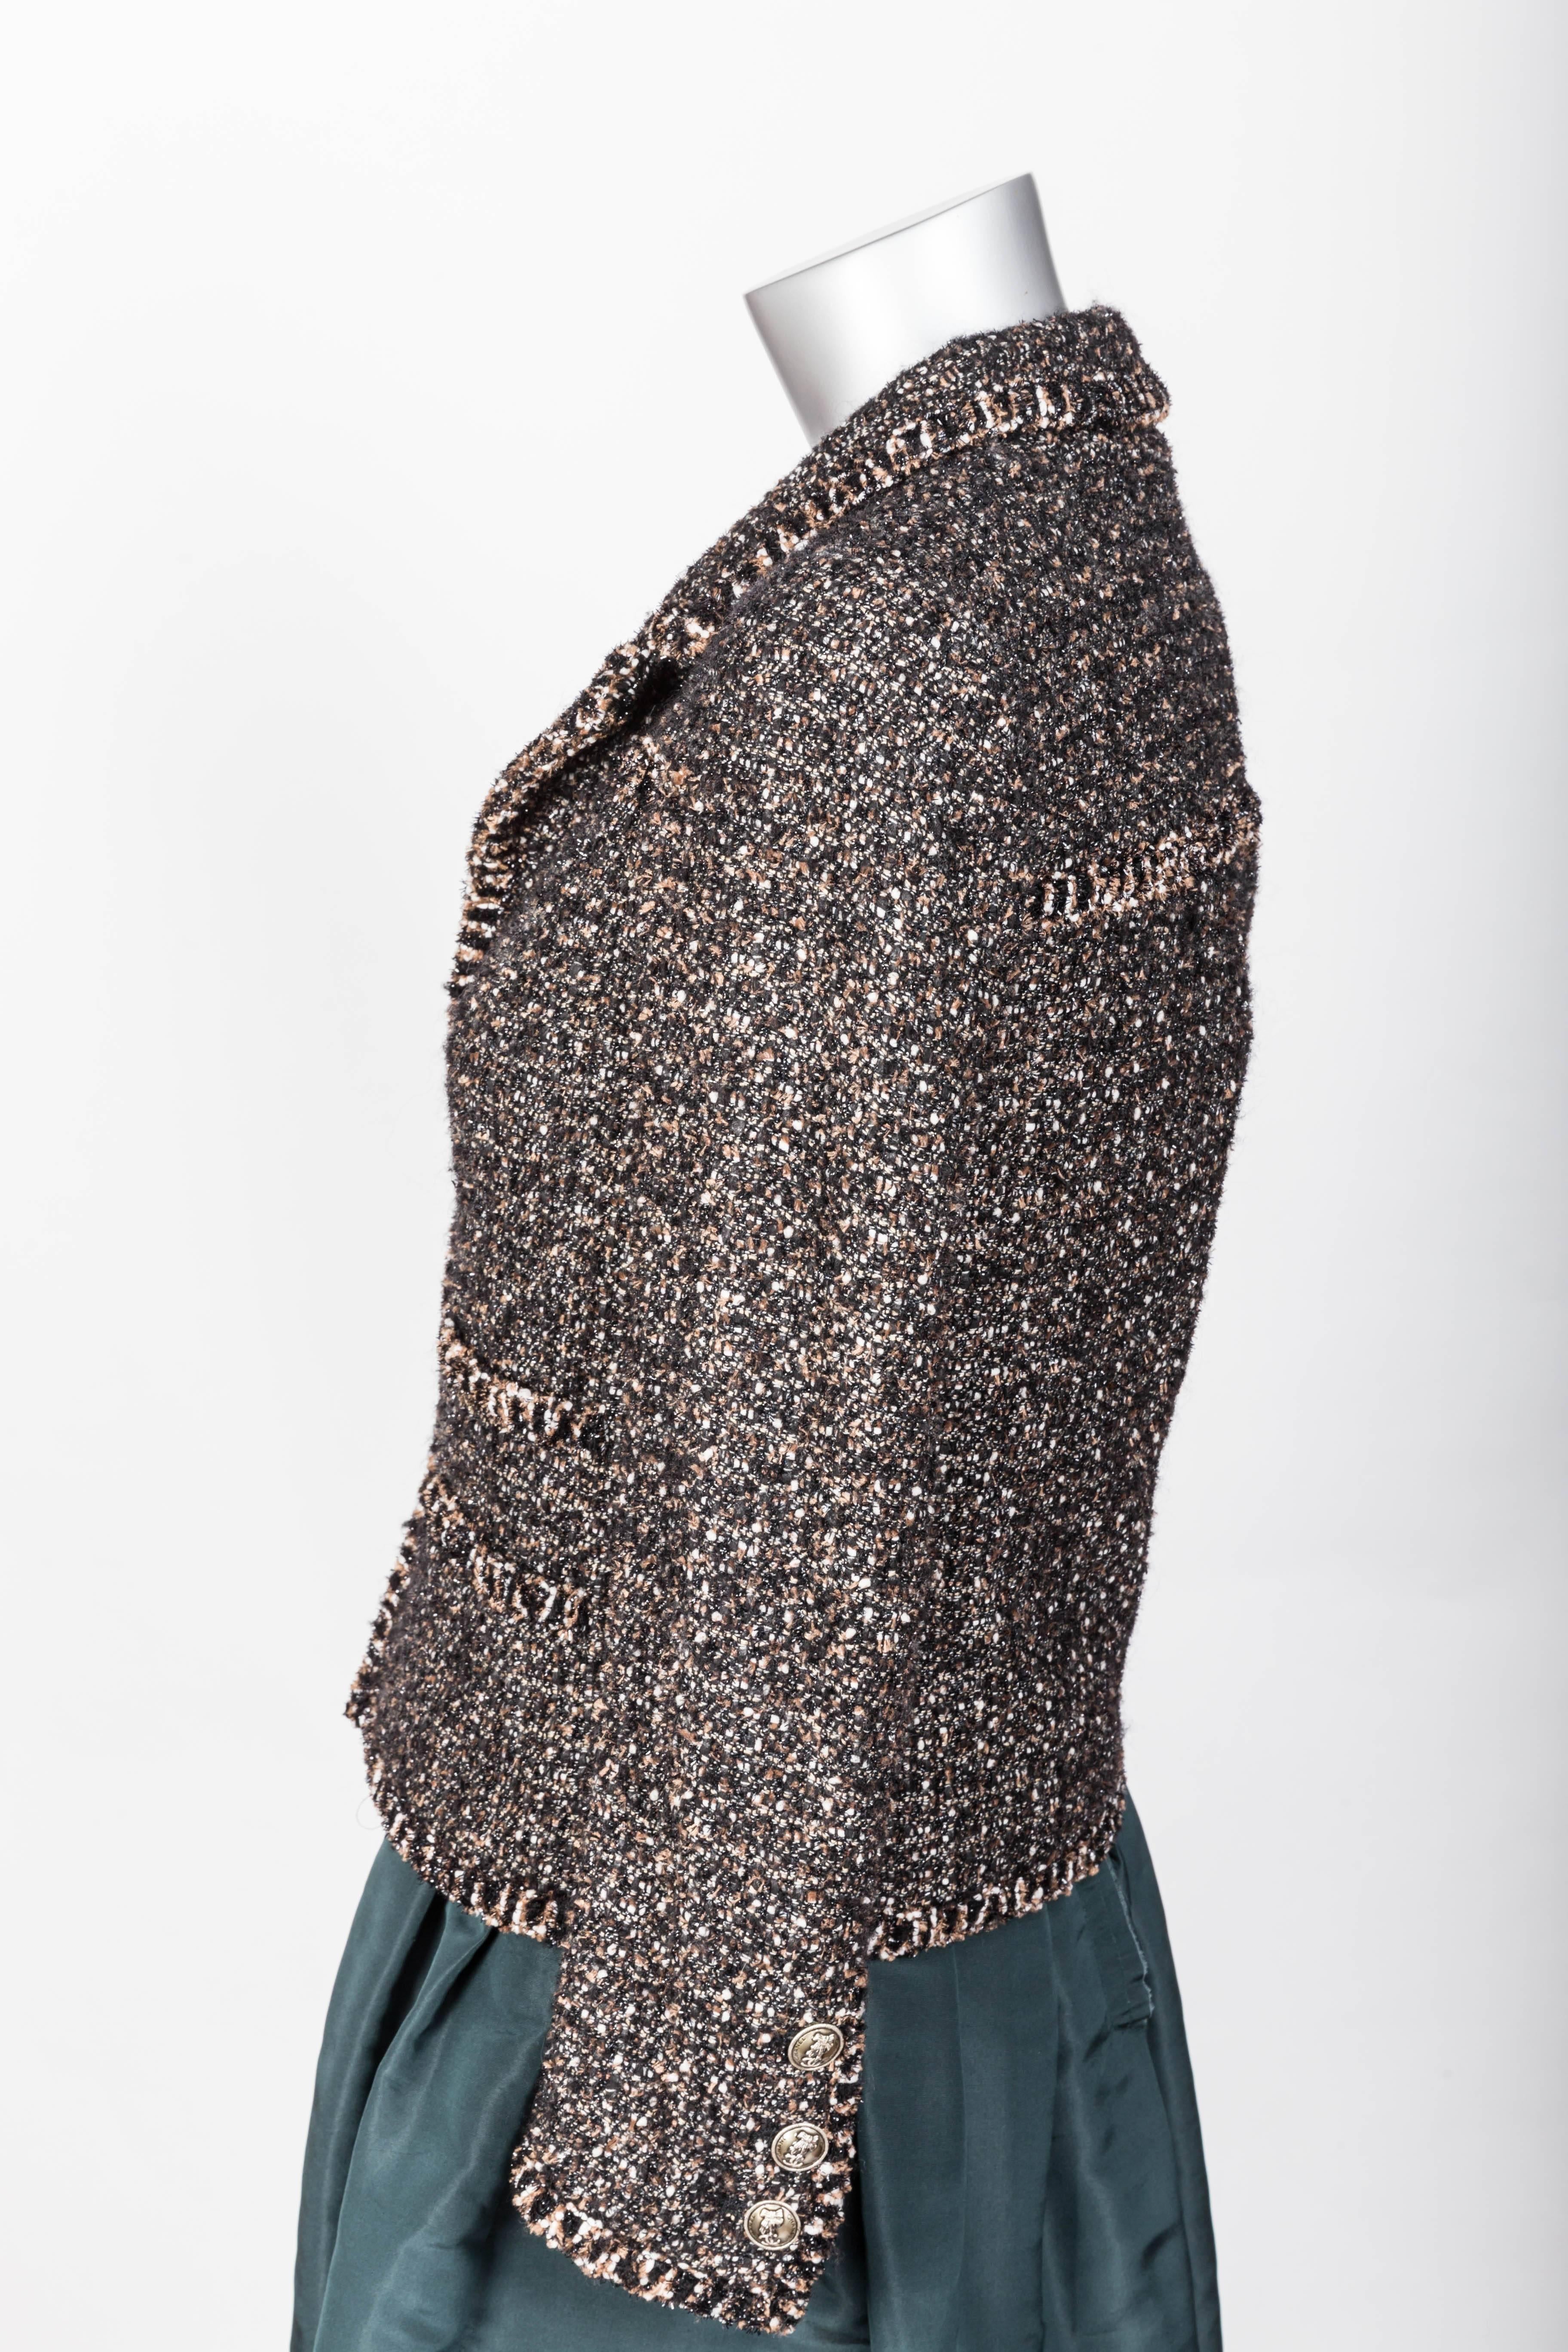 Chanel Metallic Tweed Jacket - 34 3